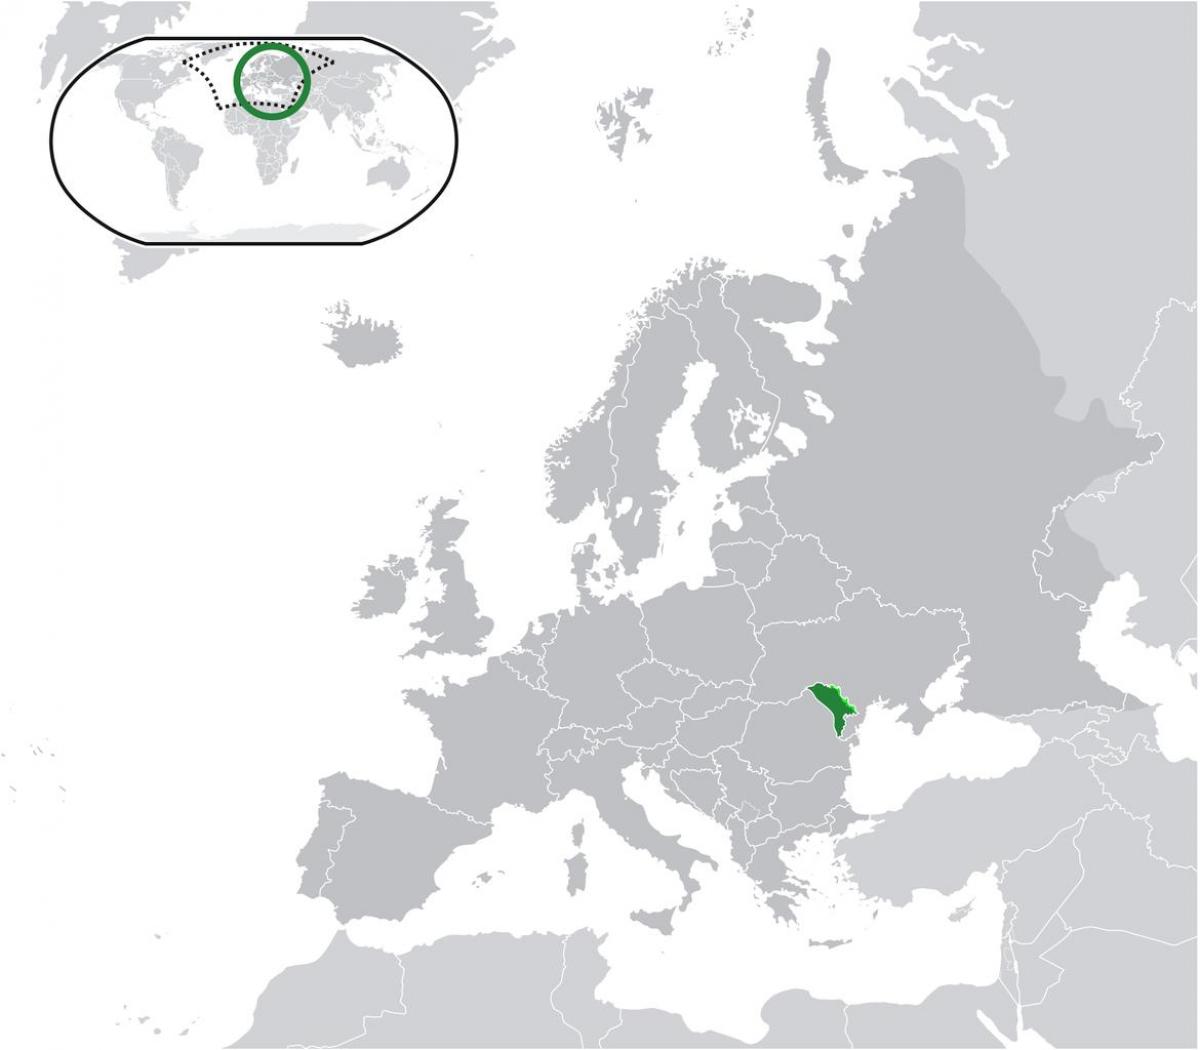 Moldavien plats på världskartan